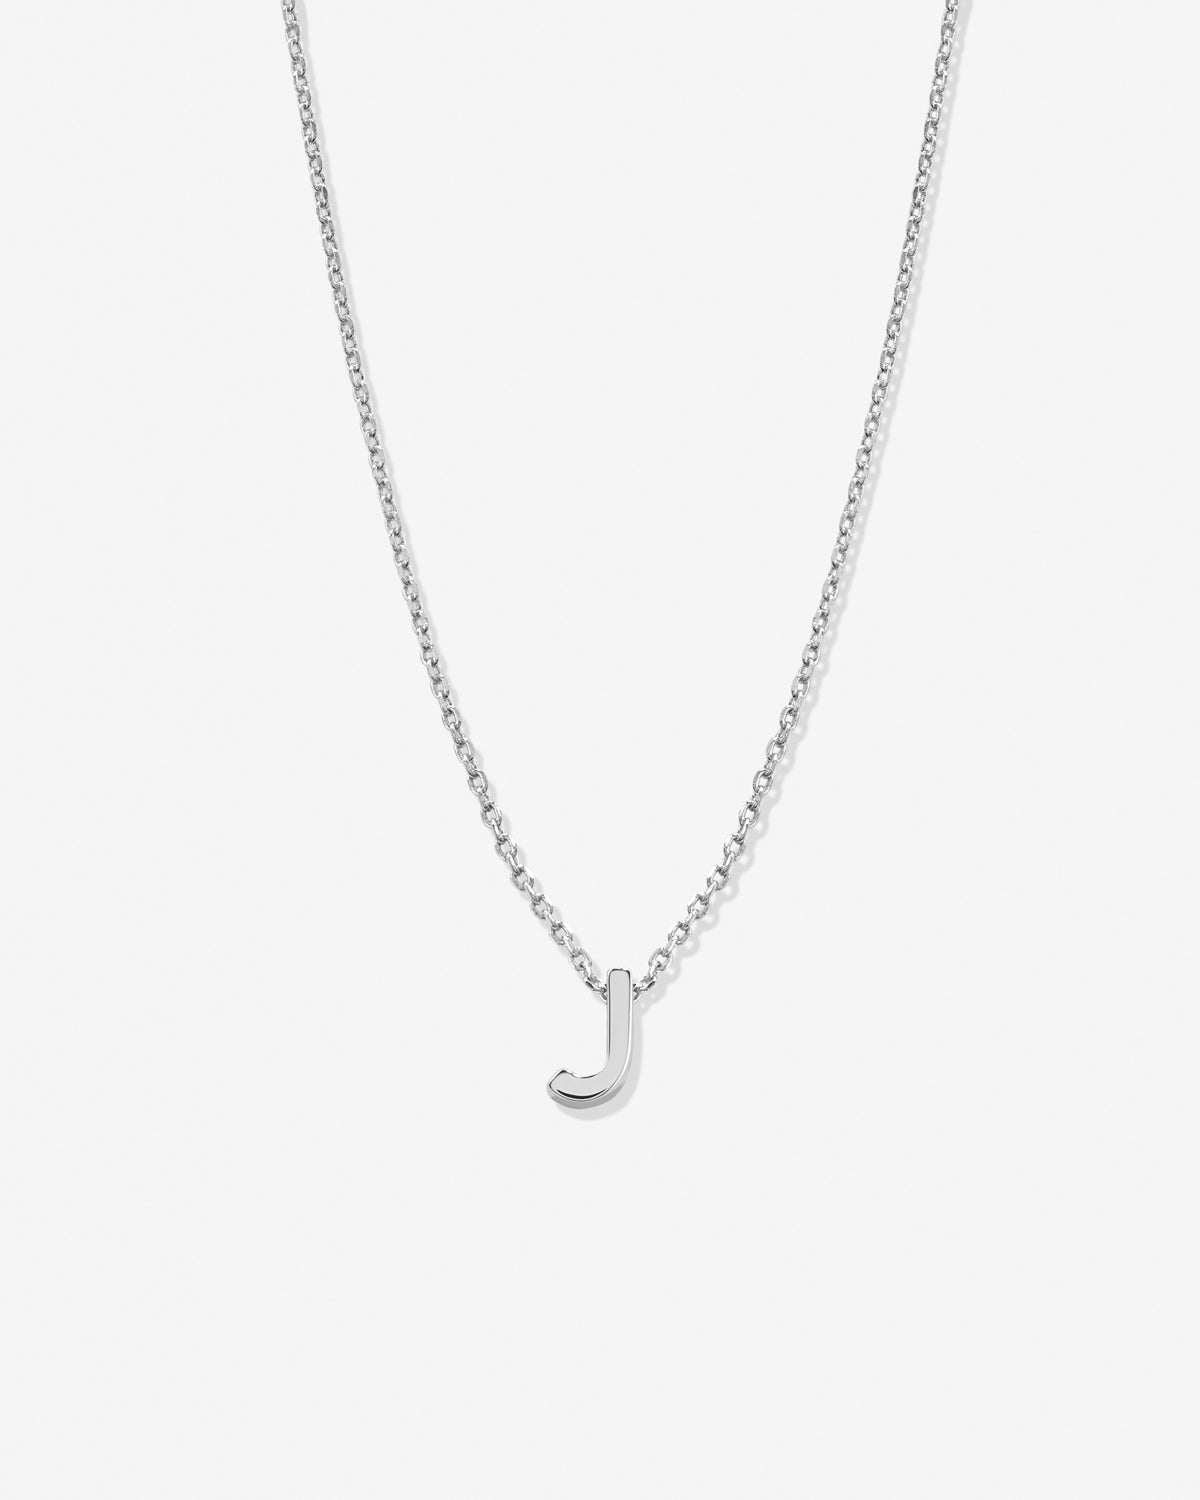 Elsa Peretti® Alphabet Letter J Pendant in Silver, Small | Tiffany & Co.